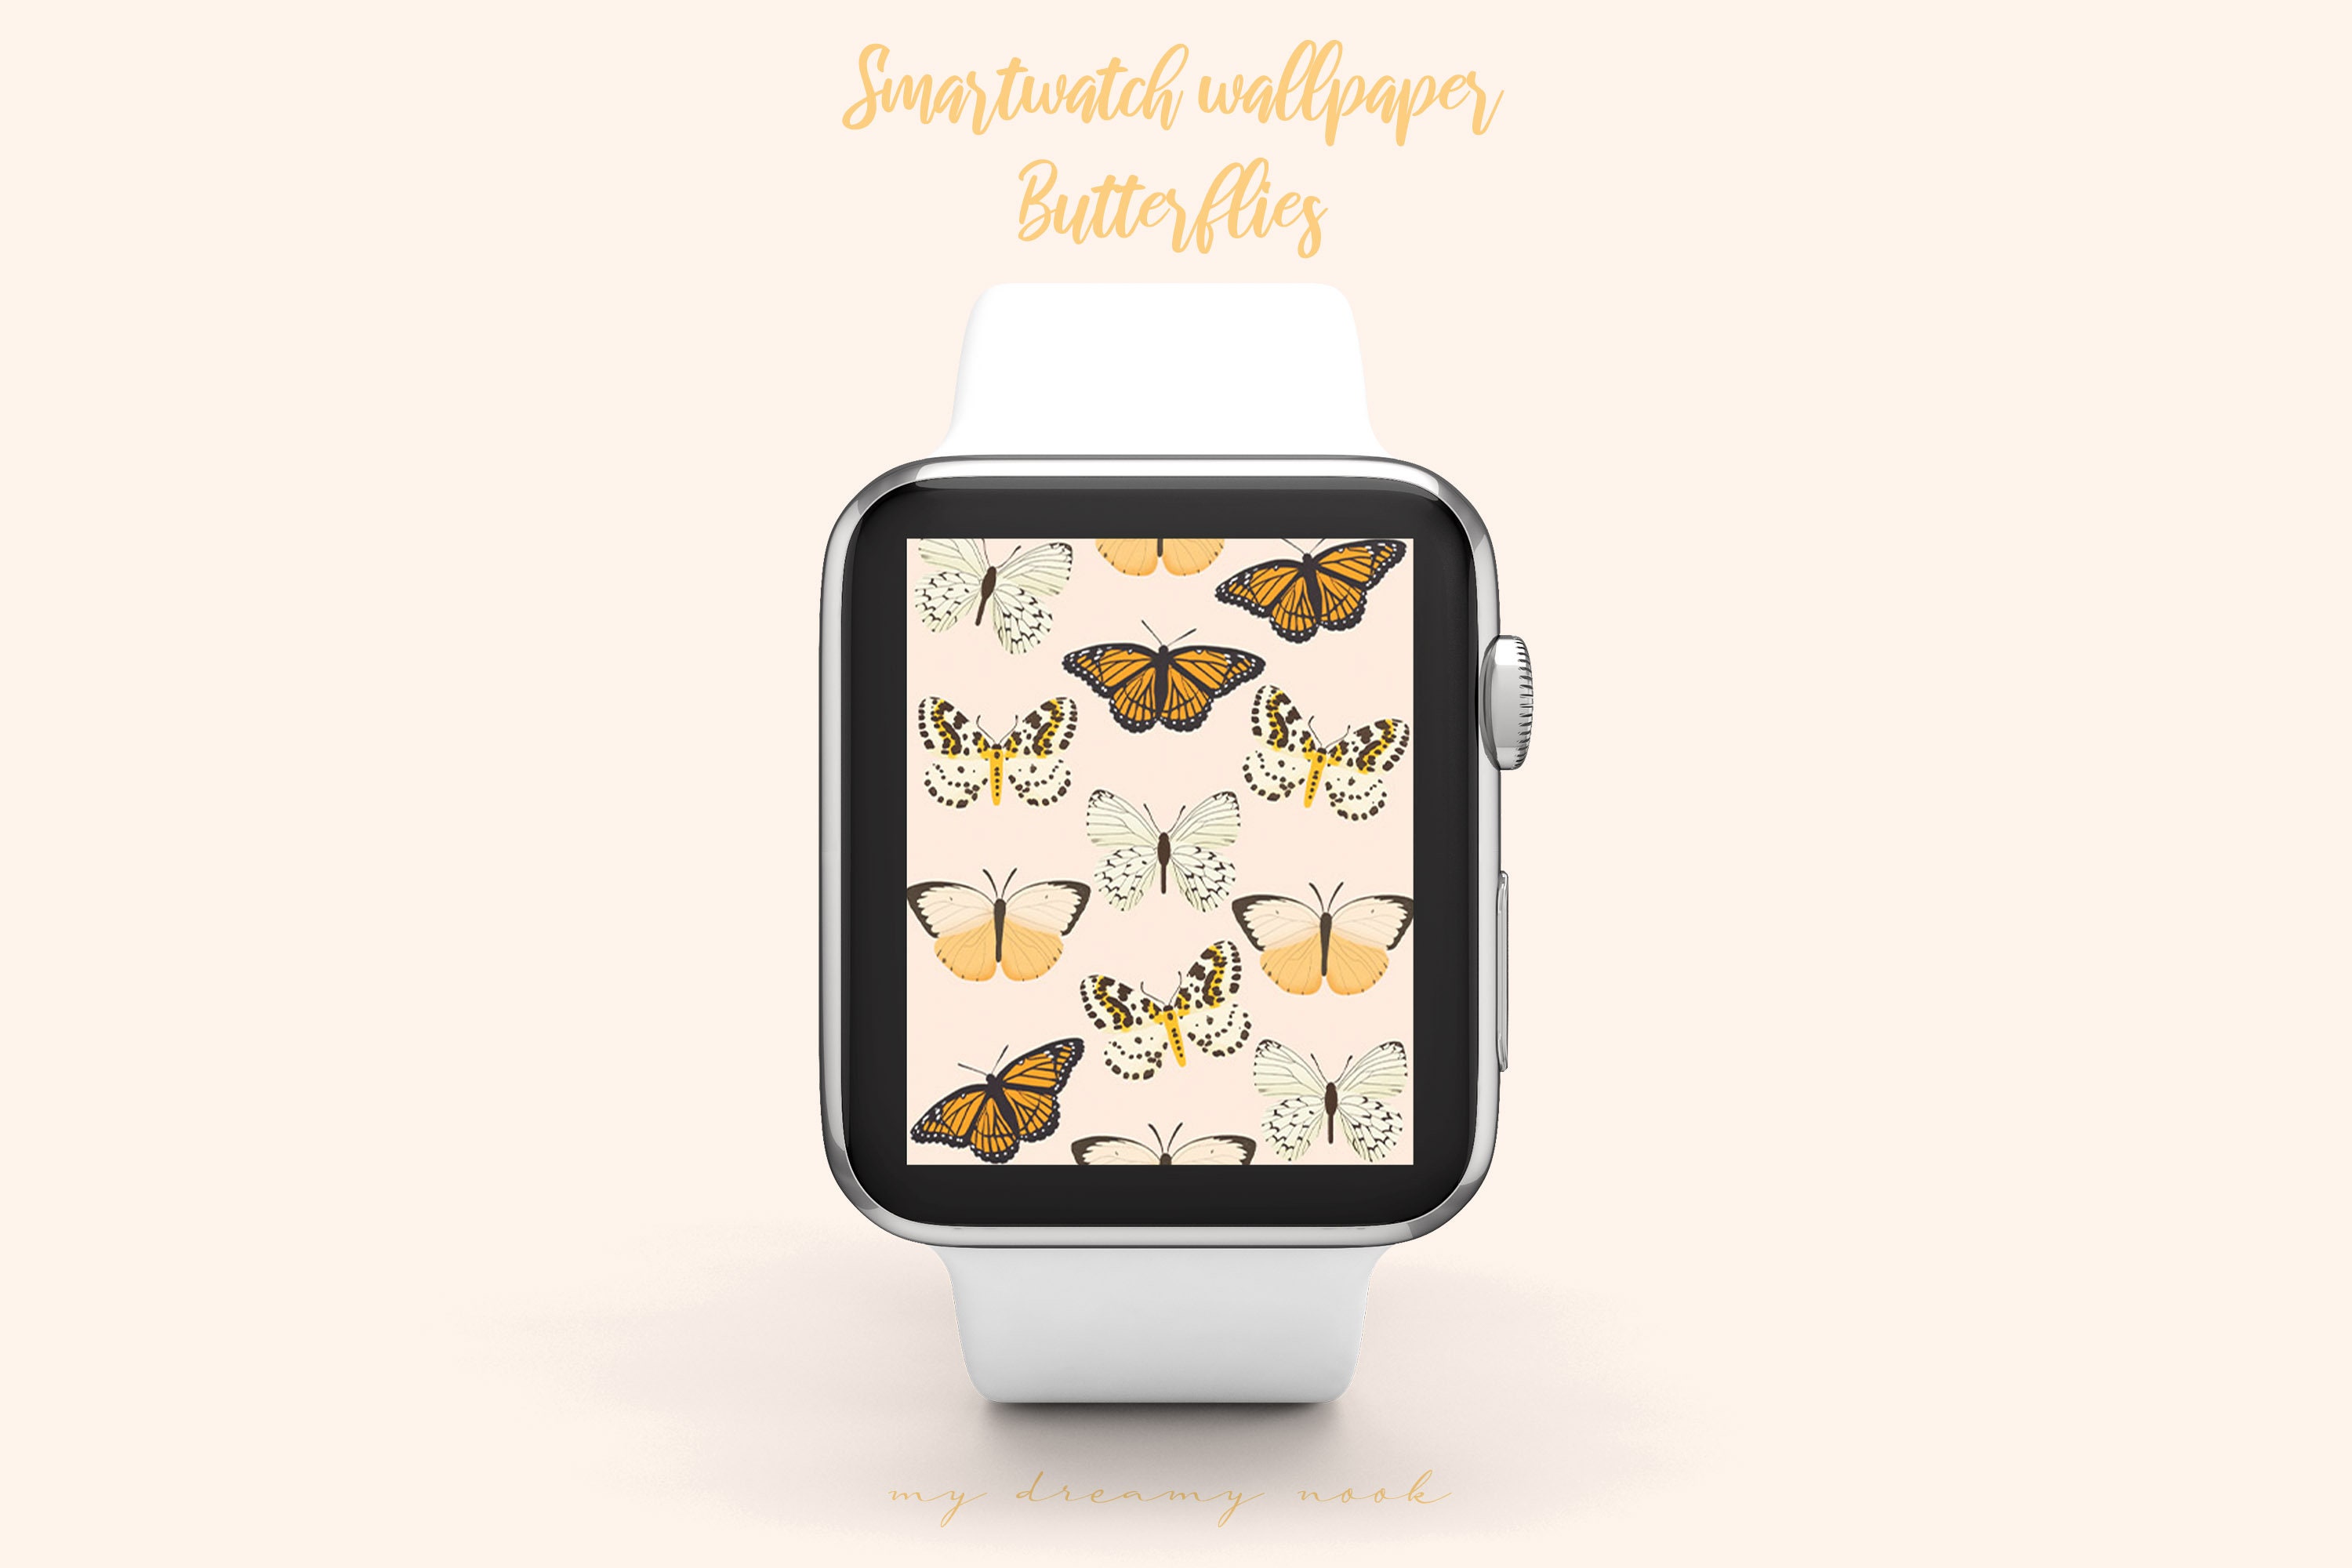 Apple Watch Wallpaper Butterflies Apple Watch Faces Pink 